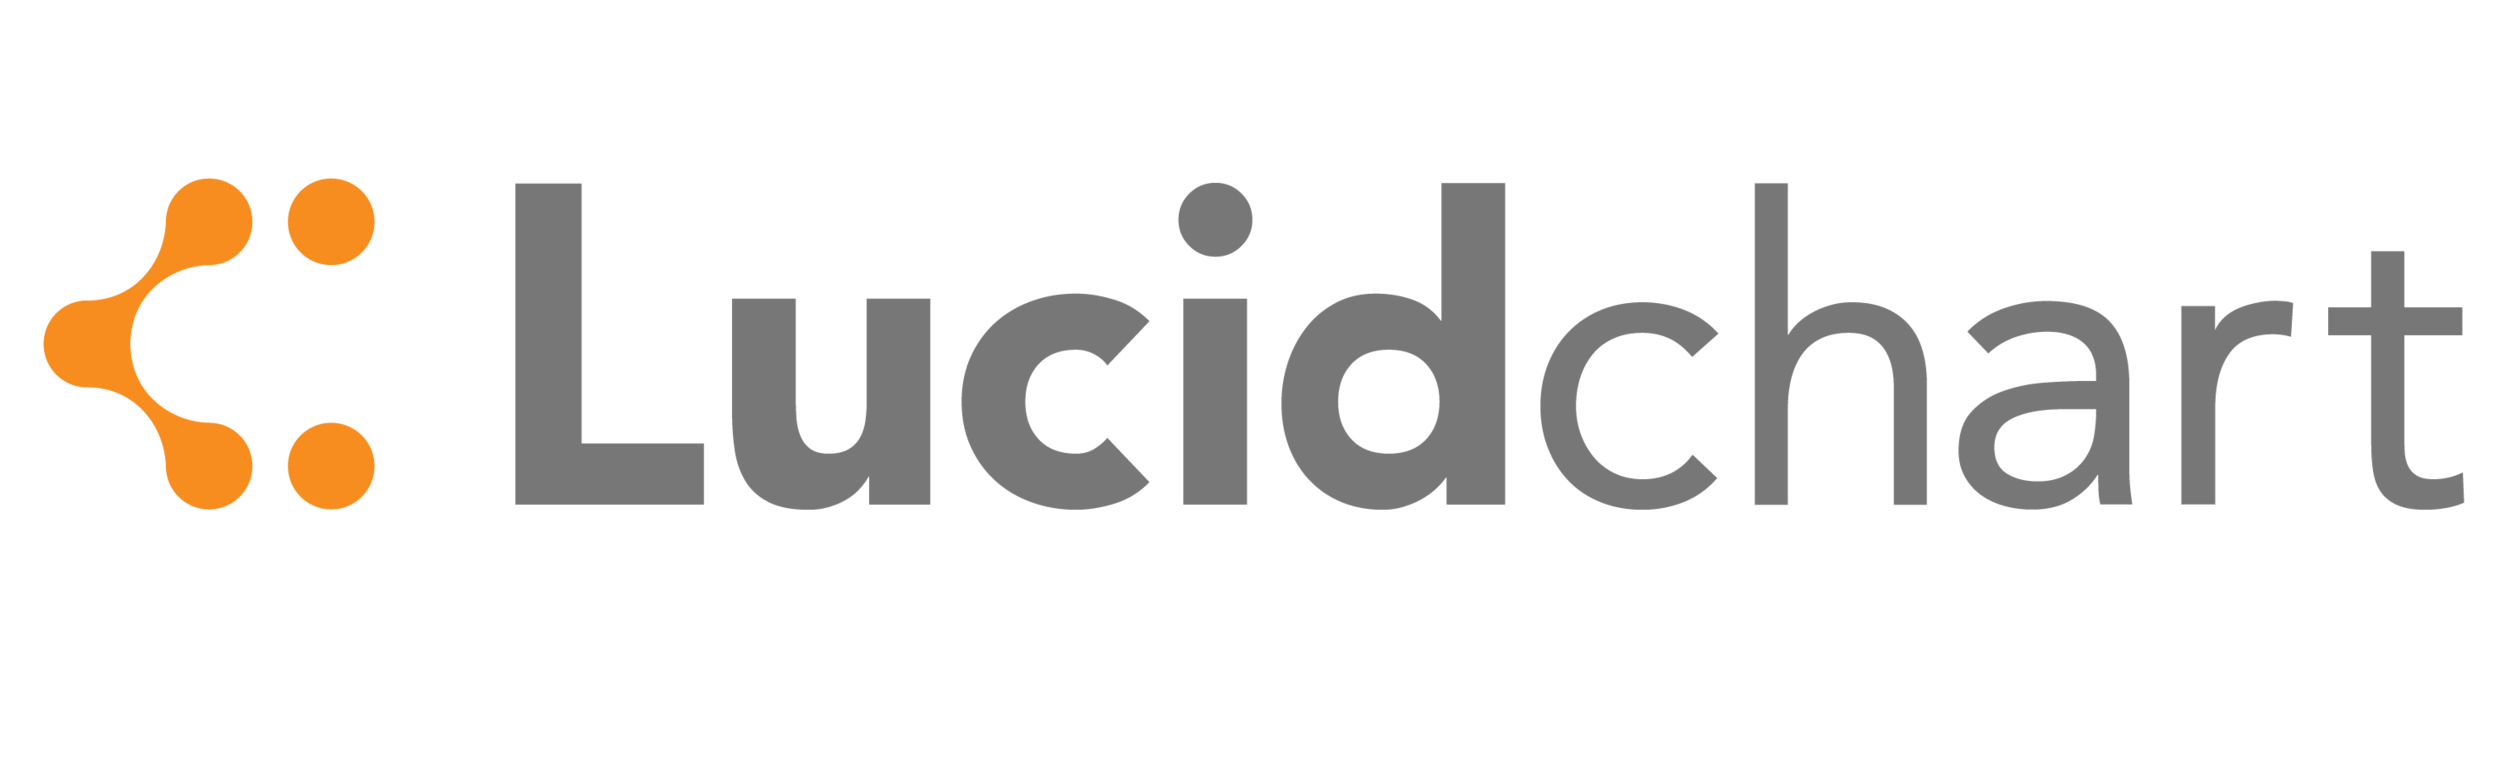 lucidchart-logo-.png